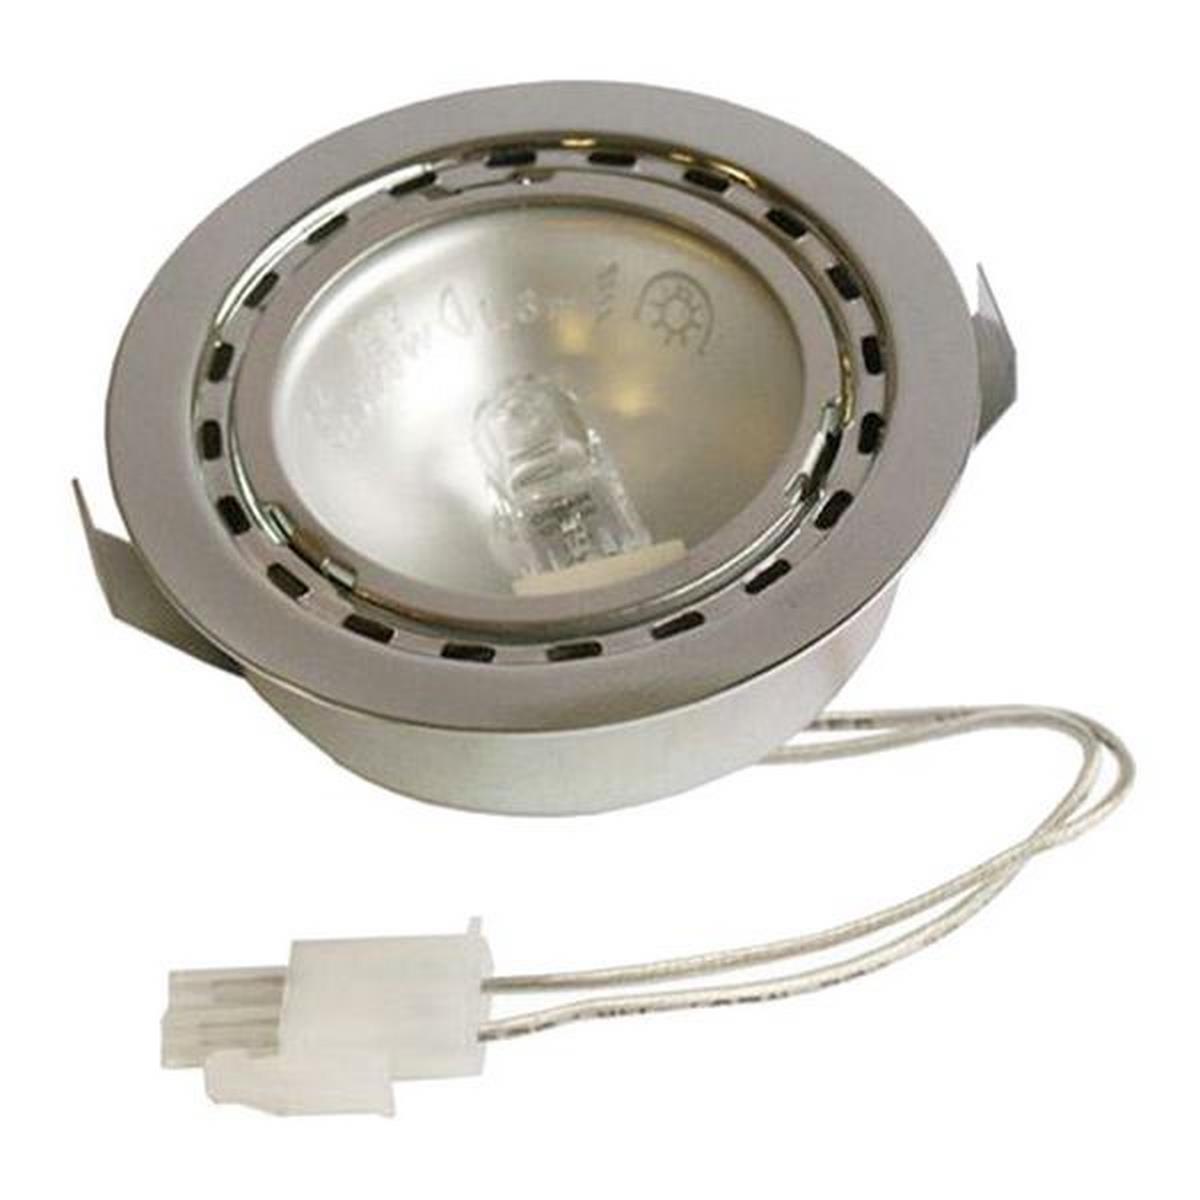 Lampe Halogene Pour Hotte Bosch, Gaggenau, Neff, Siemens - Accessoire D'appareil